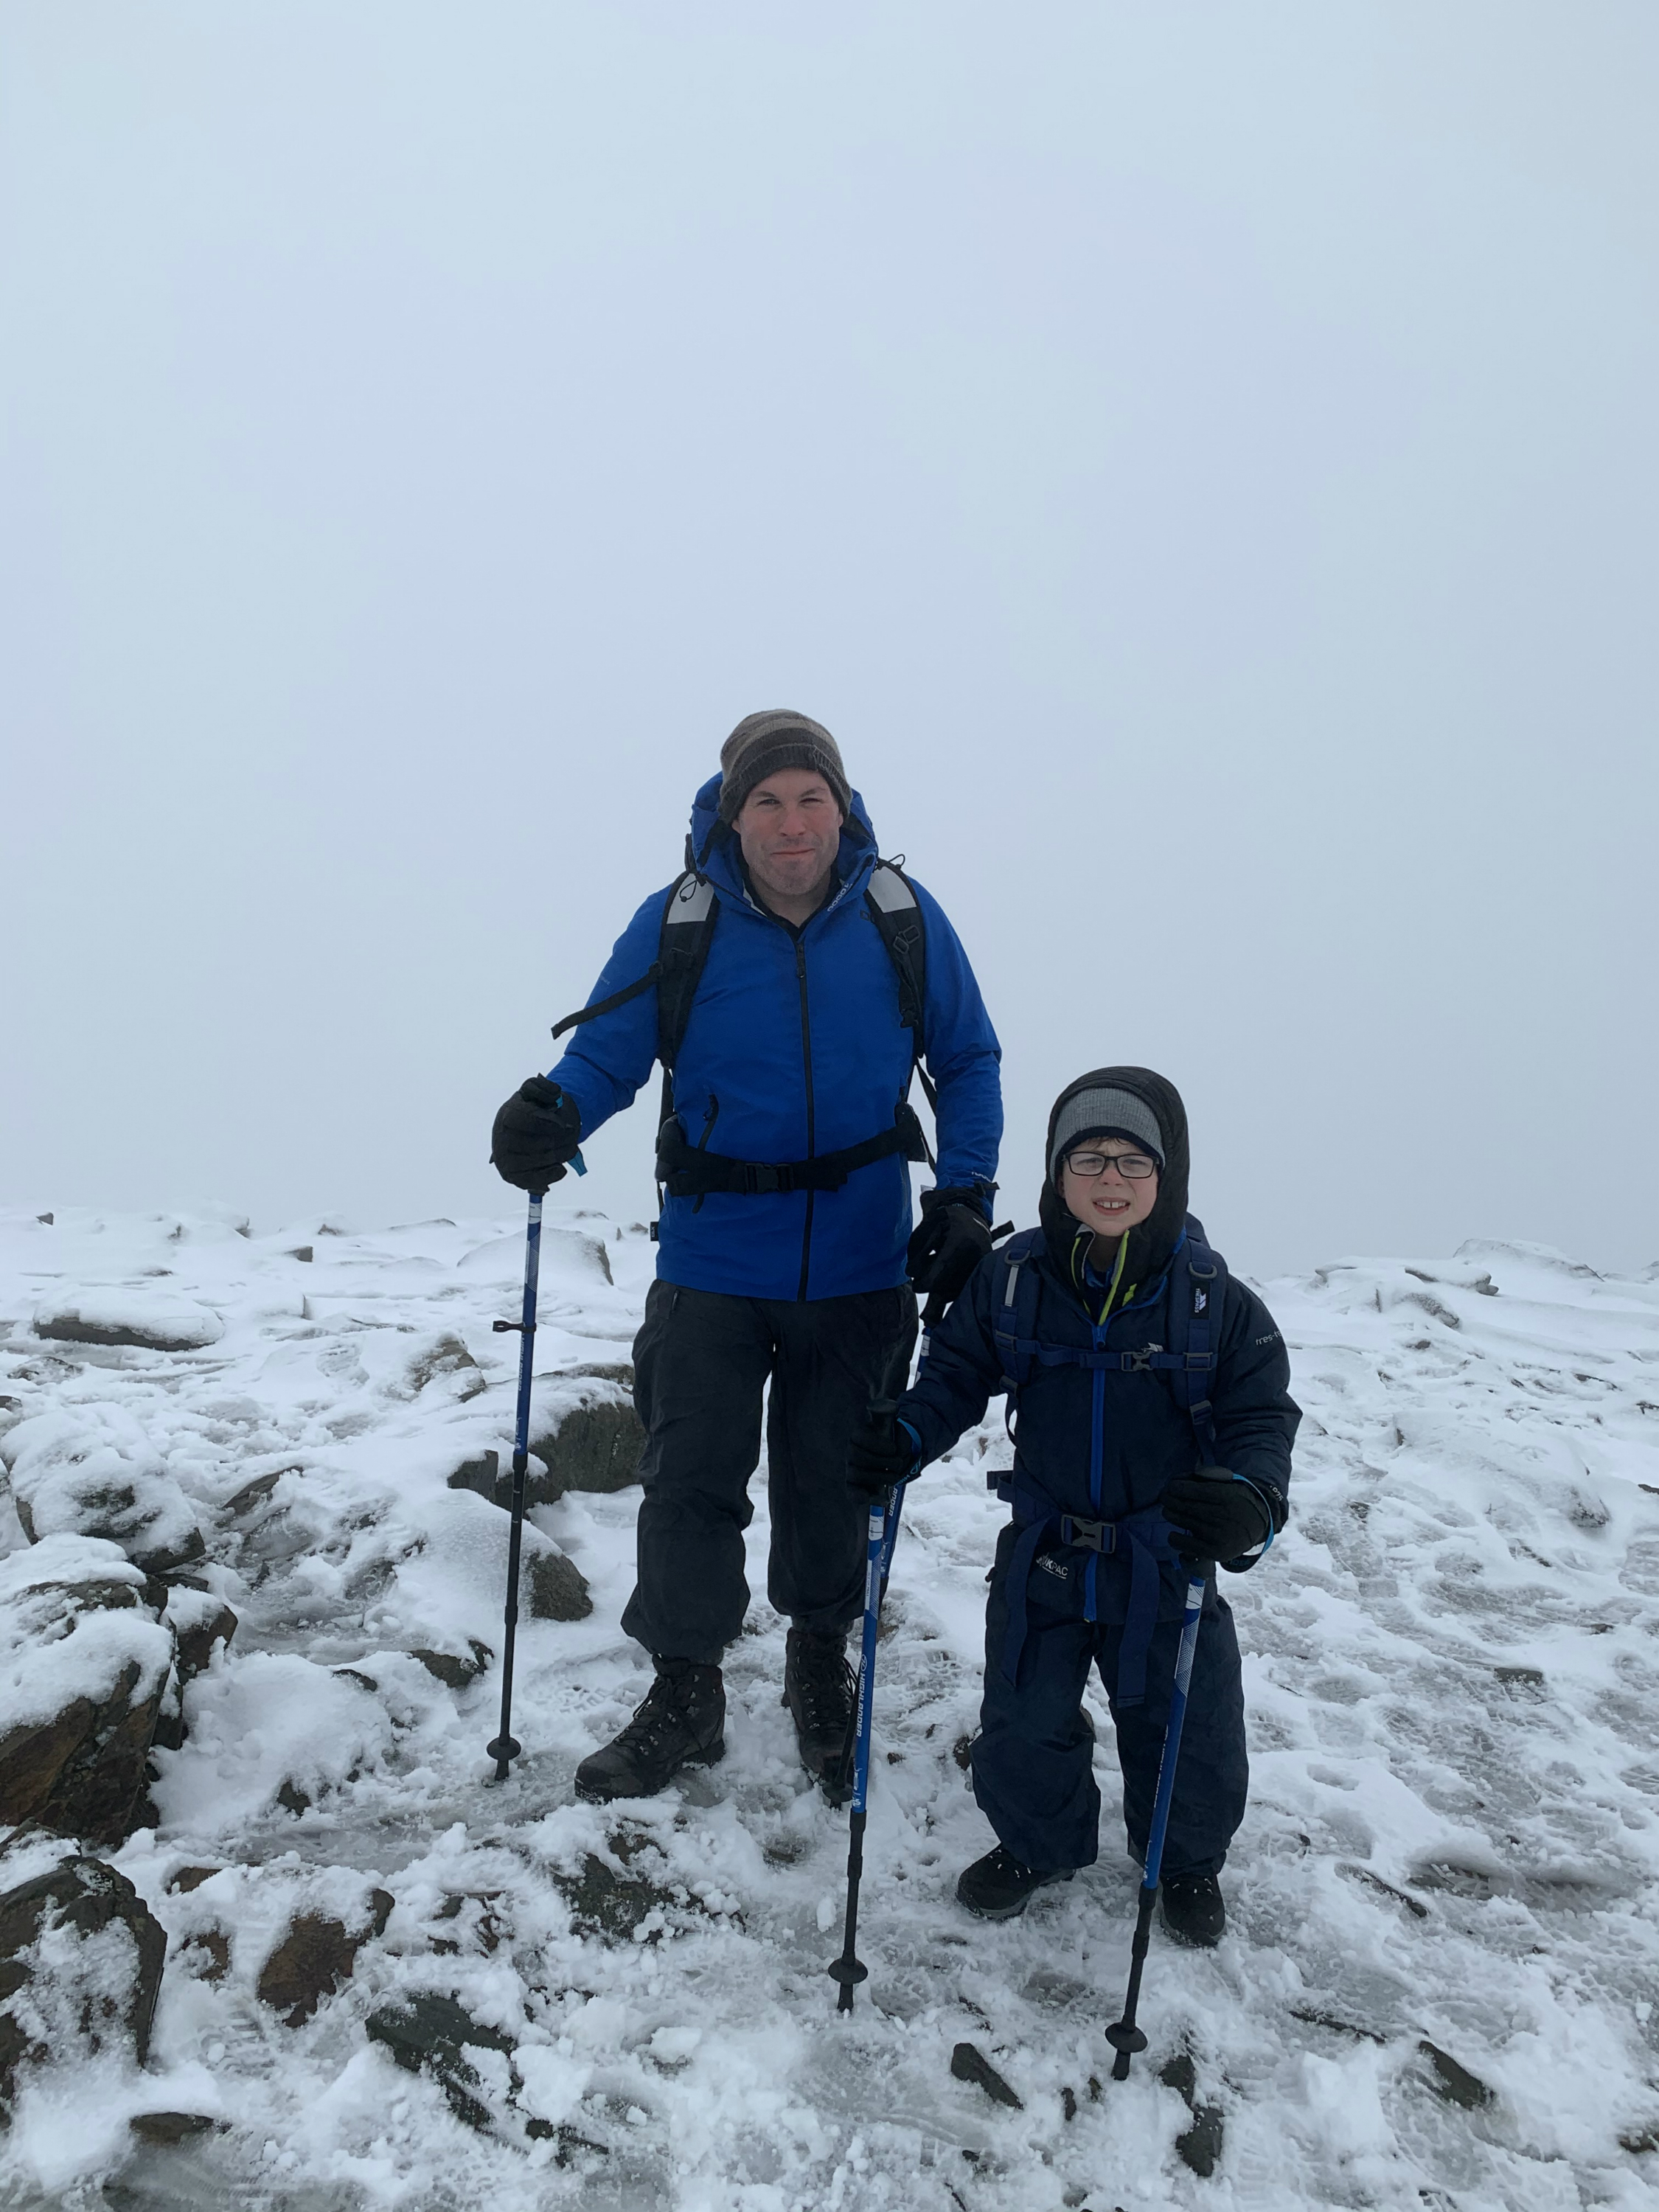 Snowdon summit, 2019